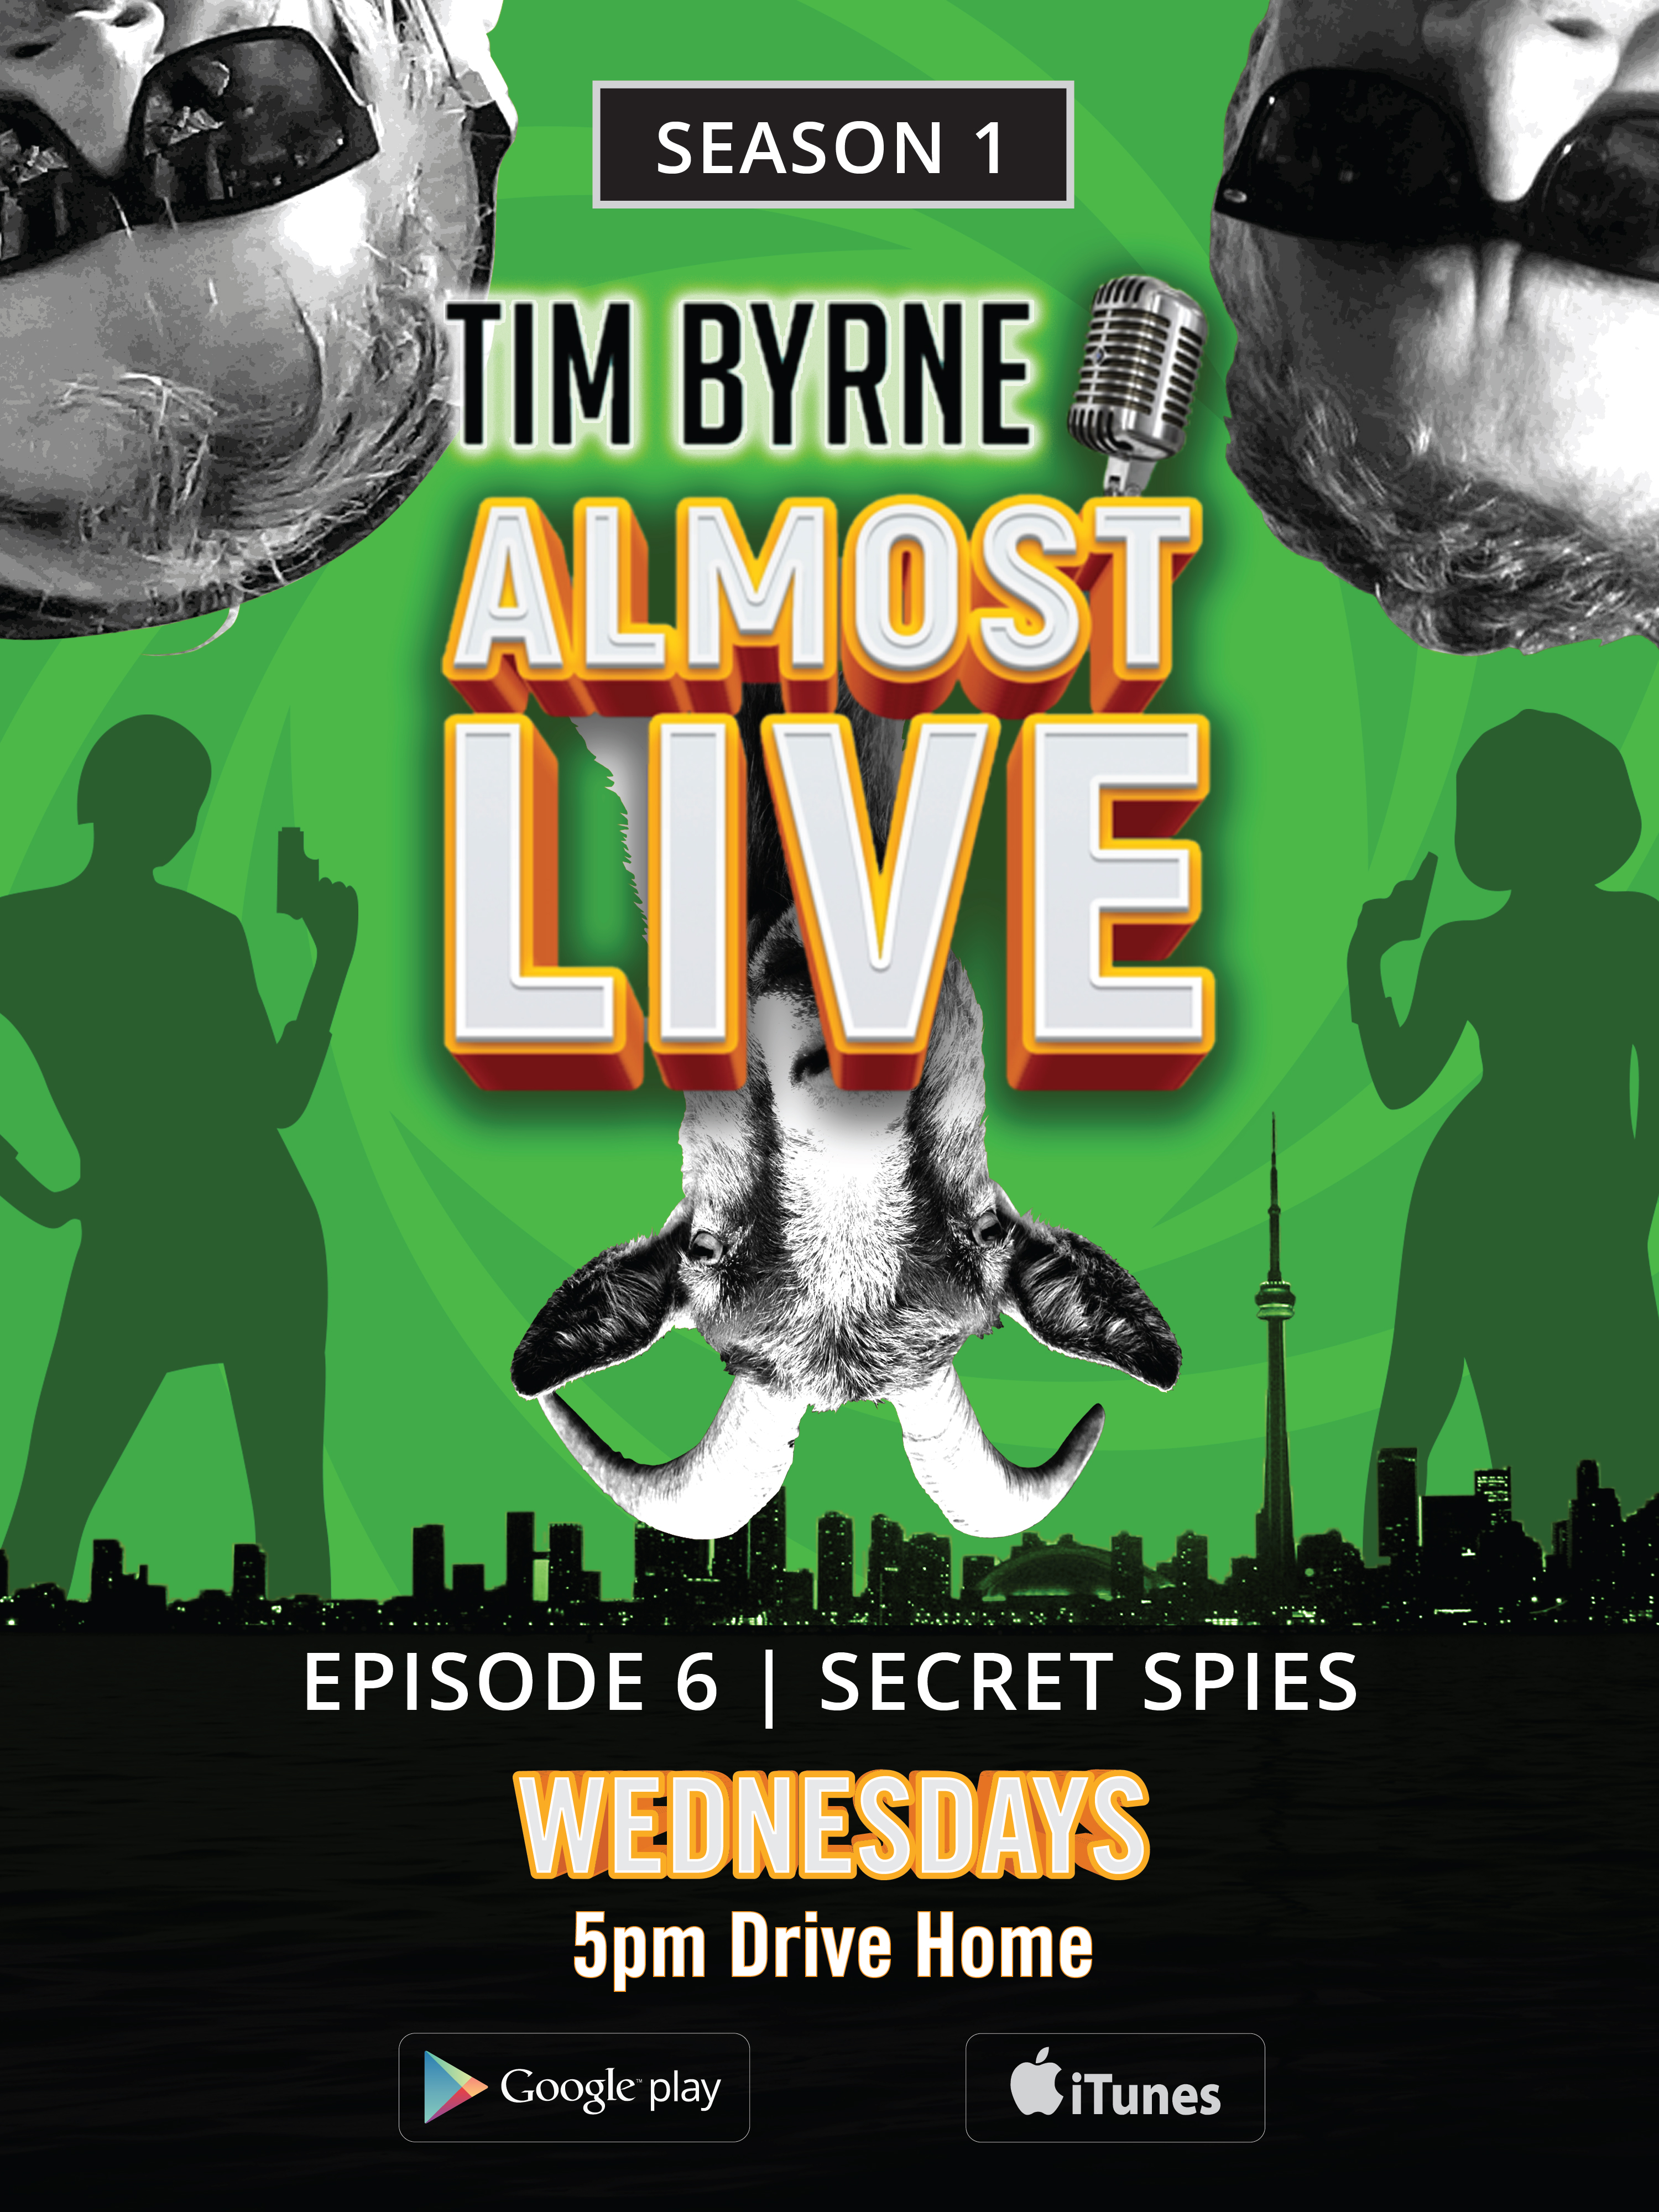 Episode 6 – Secret Spies with Doug Macy